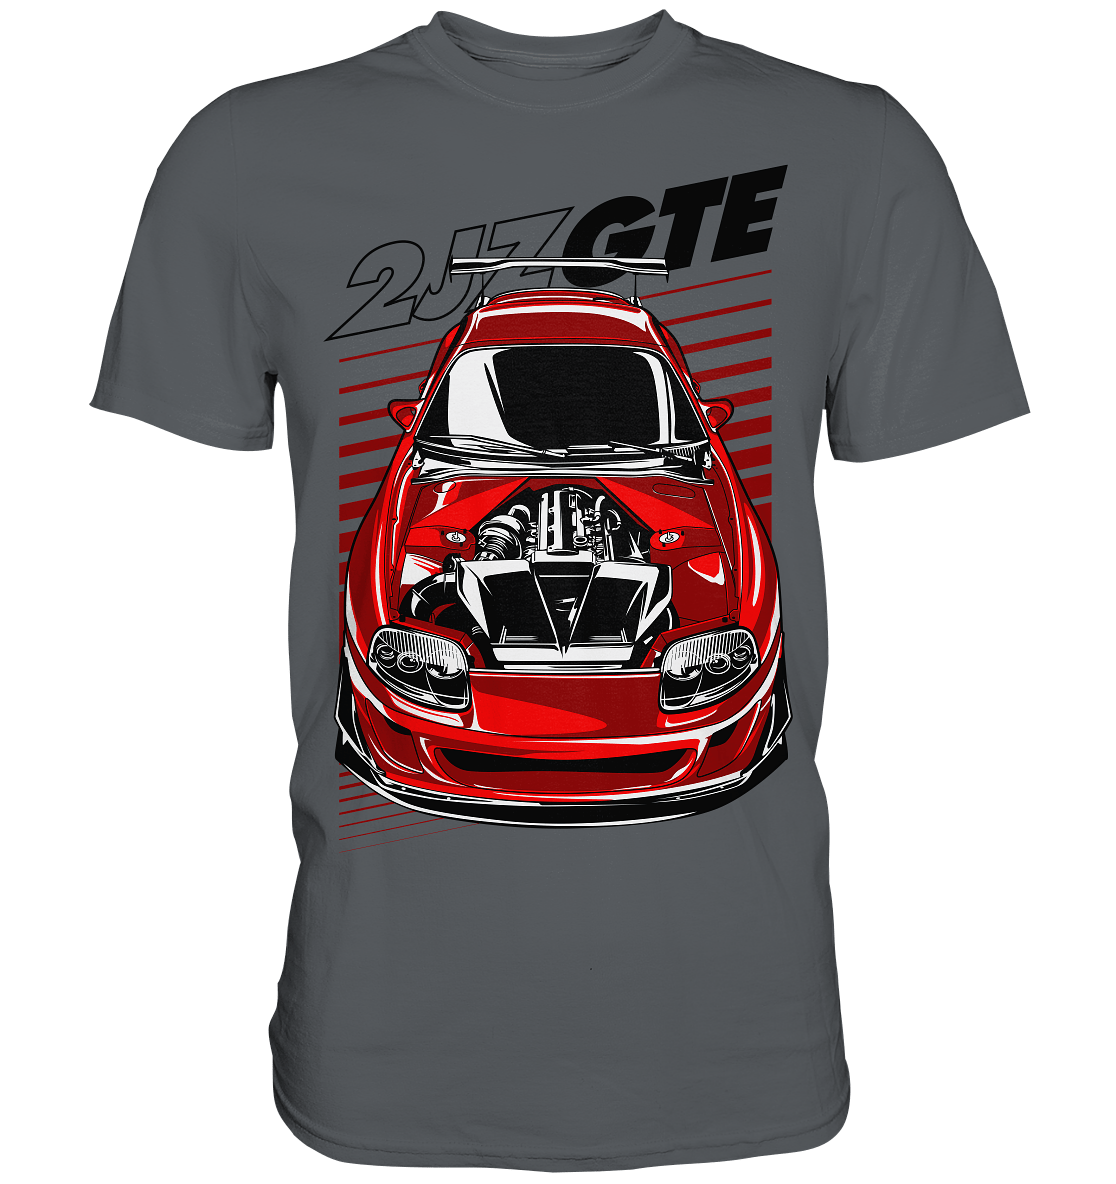 2JZ GTE MK4 - Premium Shirt - MotoMerch.de